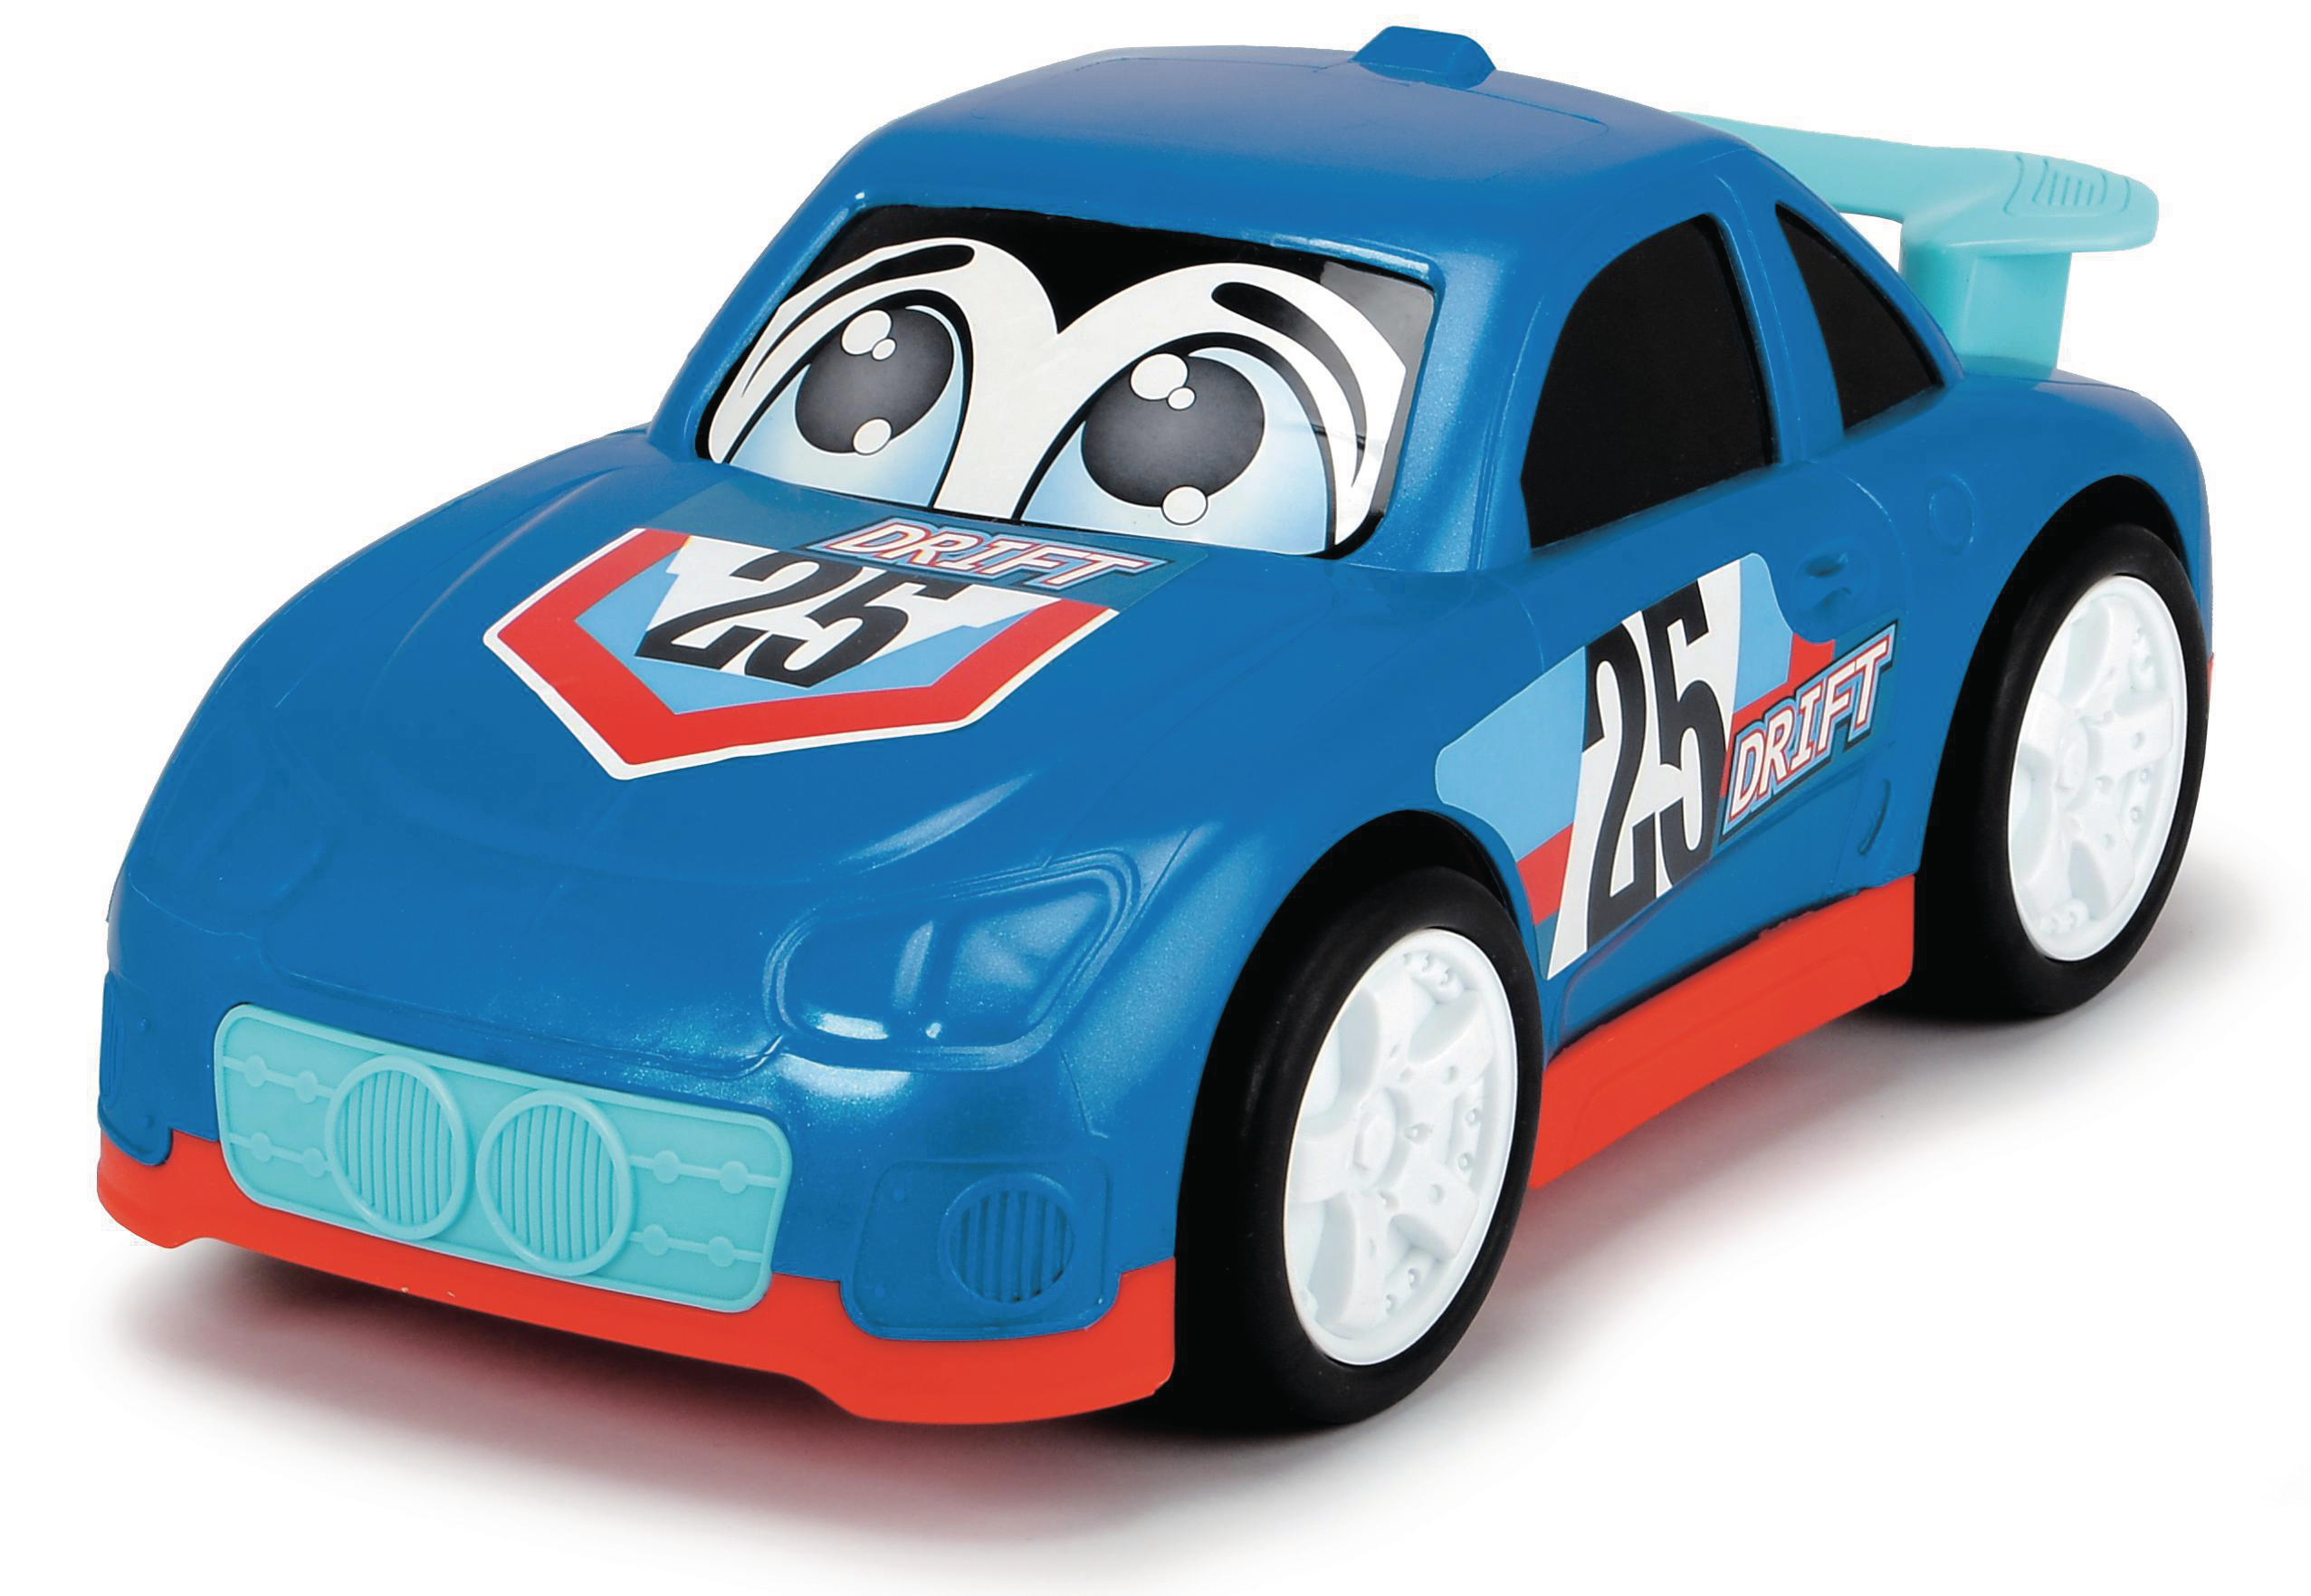 Mehrfarbig Spielzeugauto, ABC 6-sortiert Spielzeugauto DICKIE-TOYS Speedy,